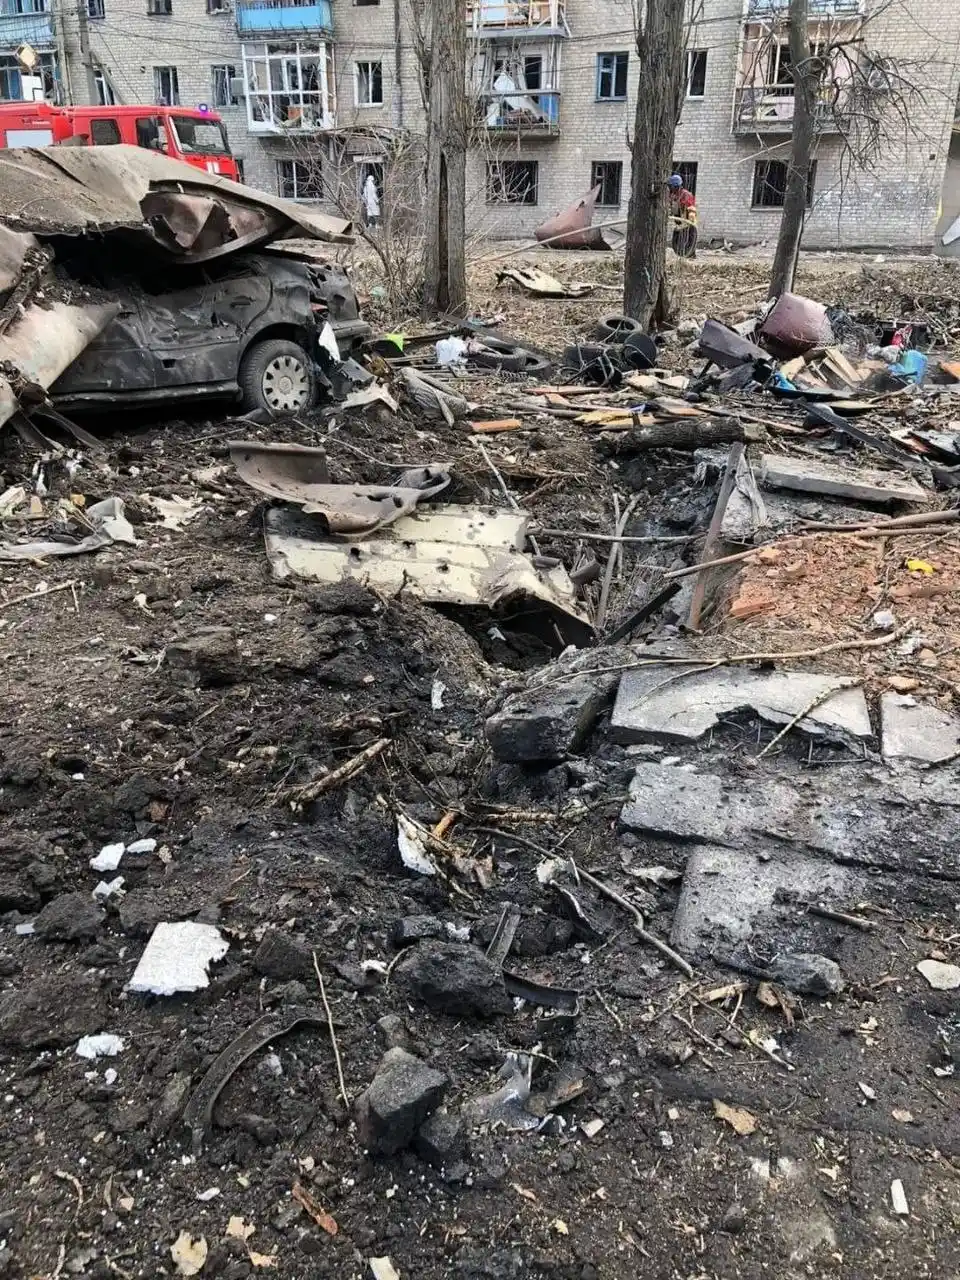 Rusya, Donetsk’i vurdu: 3 ölü, 2 yaralı
